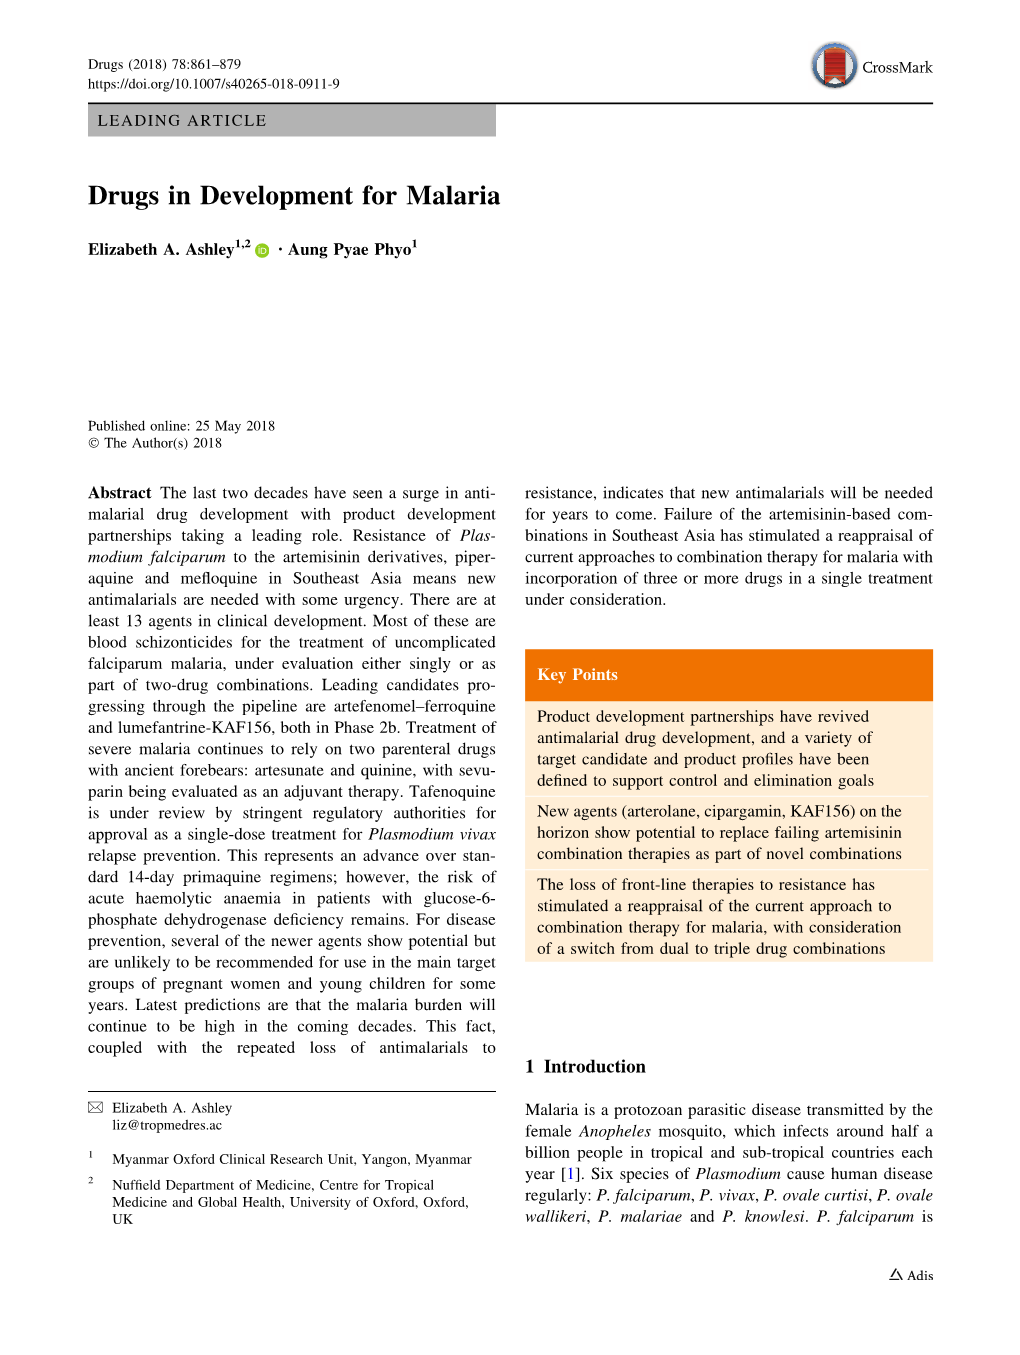 Drugs in Development for Malaria